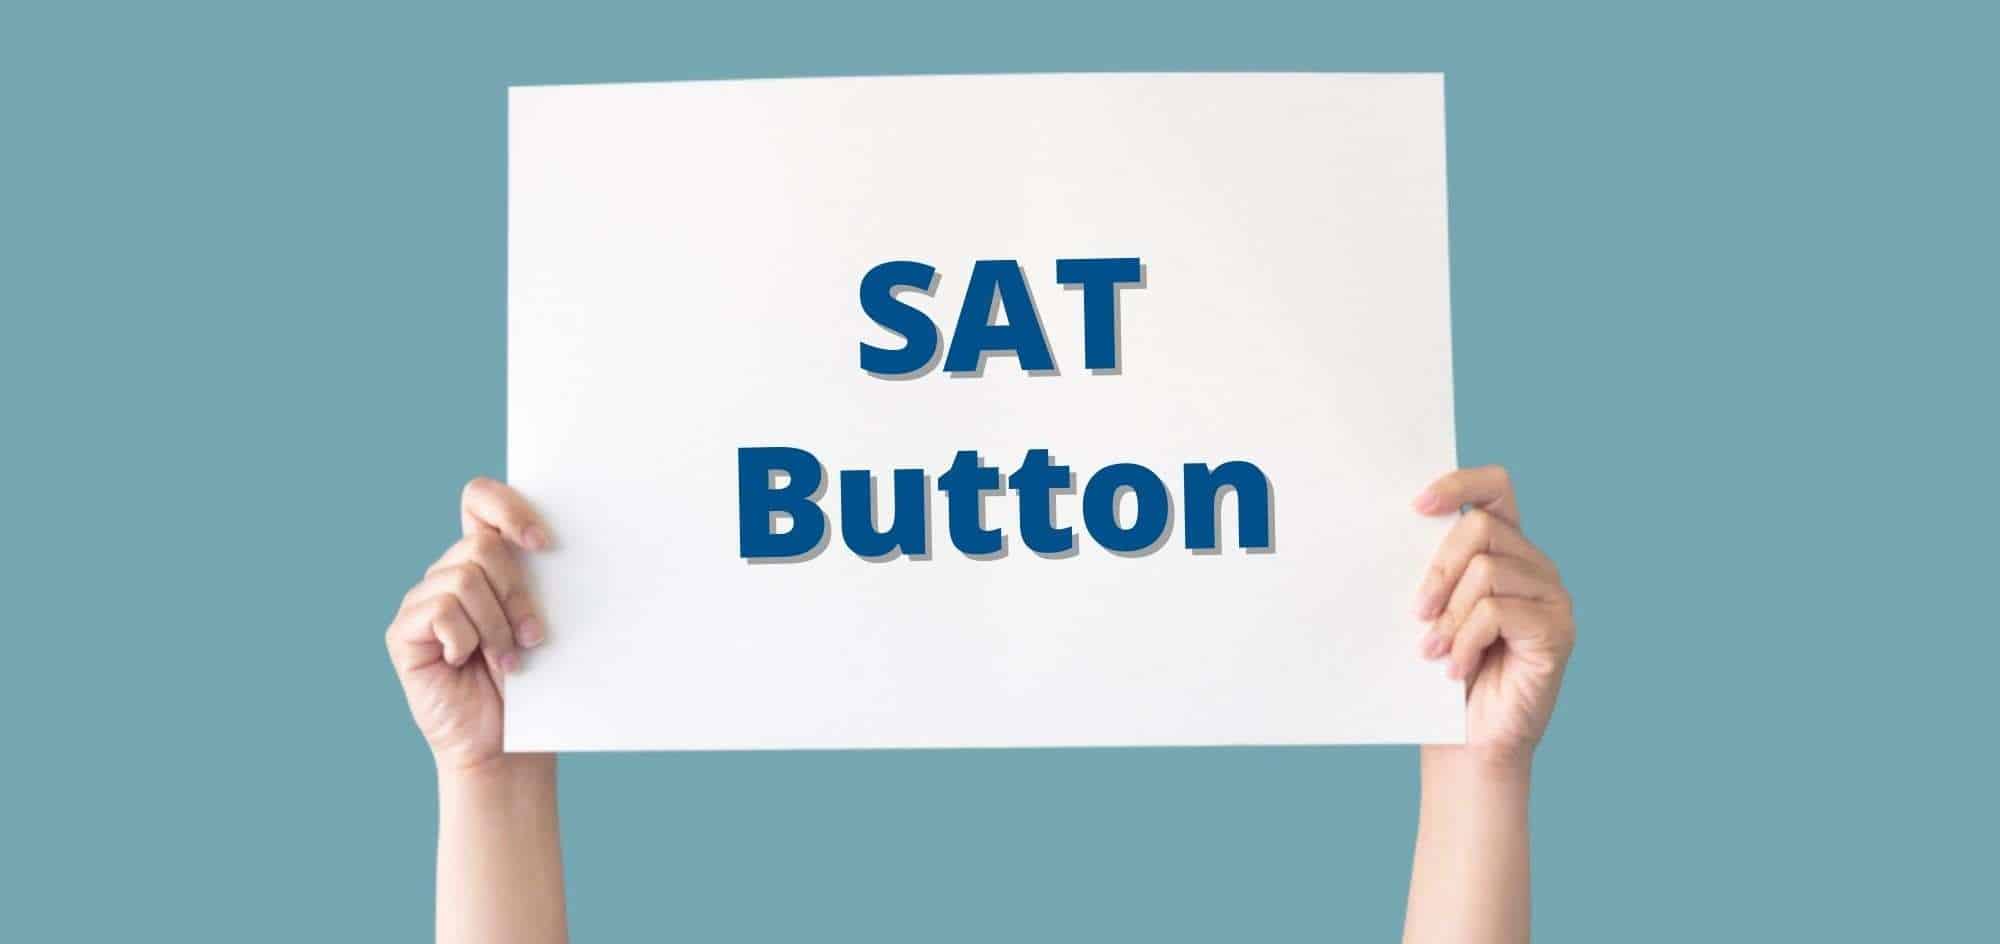 SAT Button